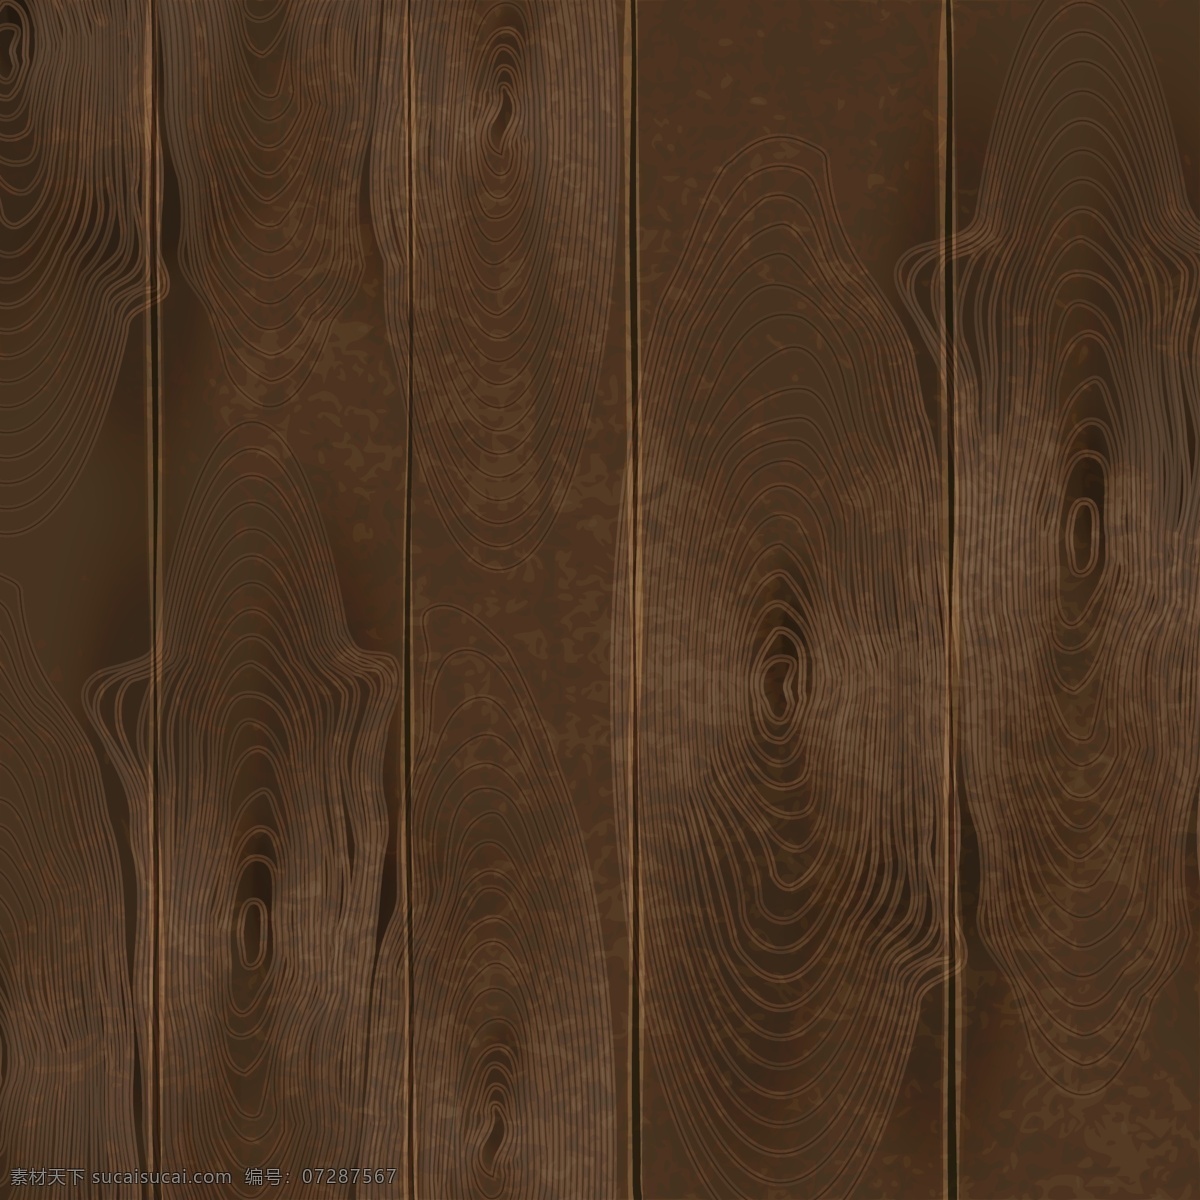 深褐色 手绘 写实 原木 木纹 背景 木板 质感 矢量图 木头 木质 木牌